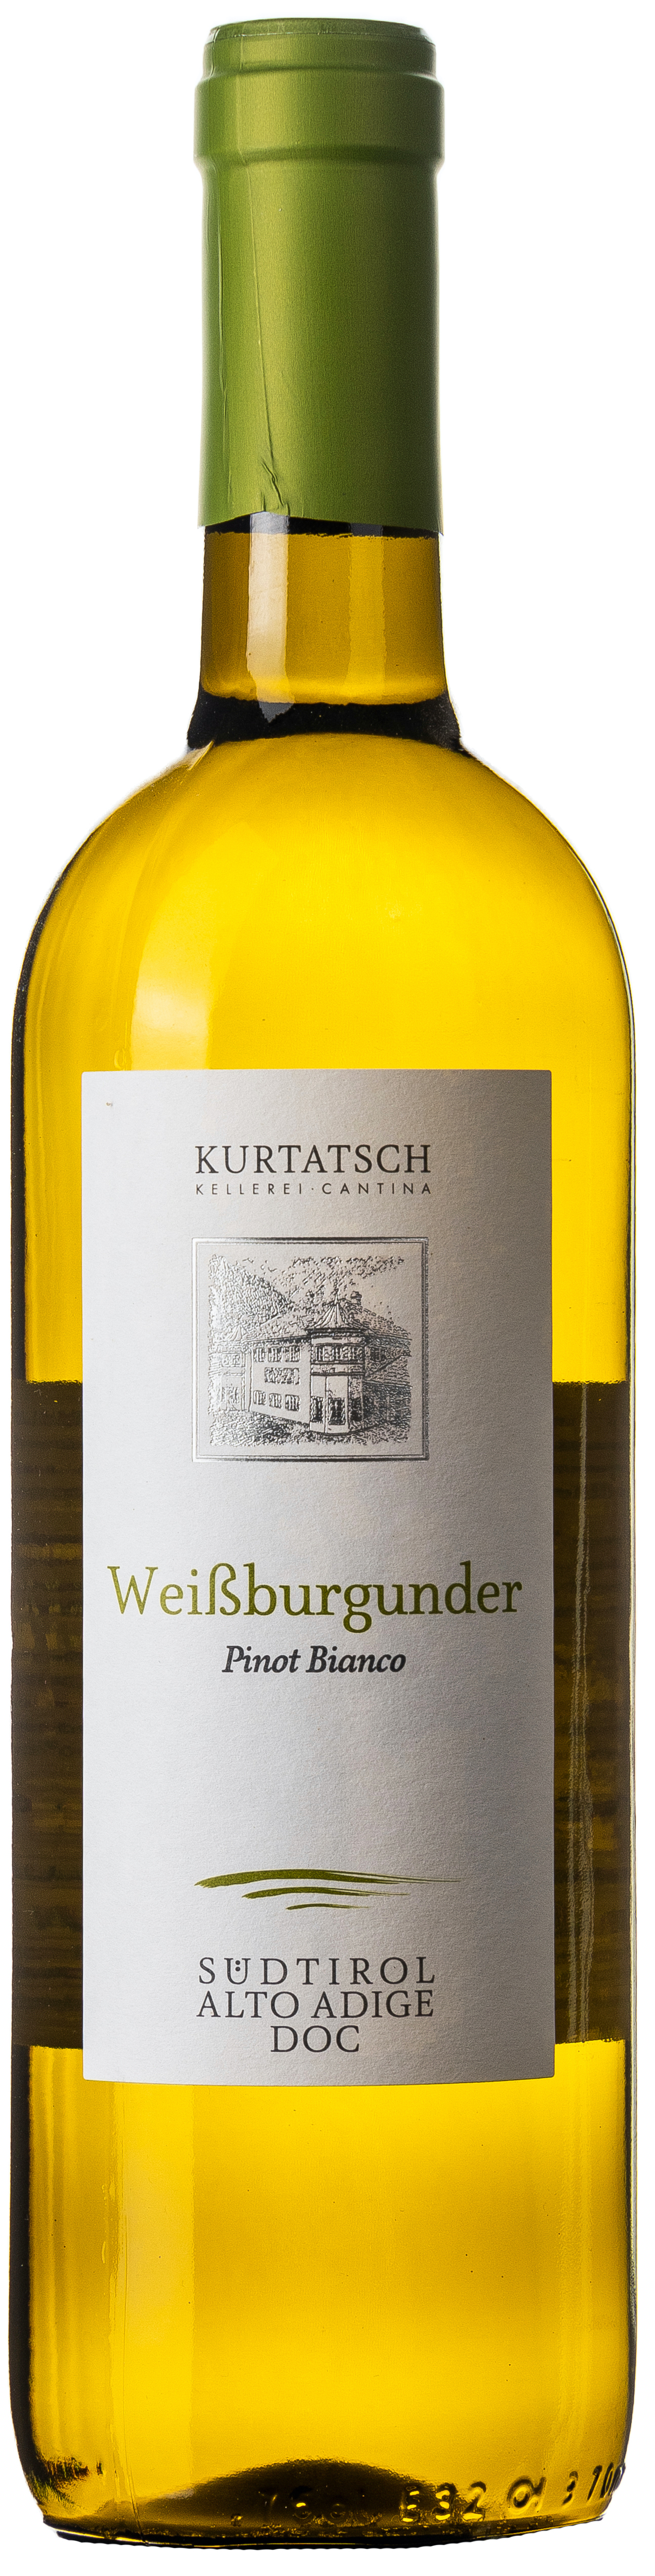 Südtirol Weissburgunder Pinot Bianco trocken Kurtatsch 13% vol. 0,75L